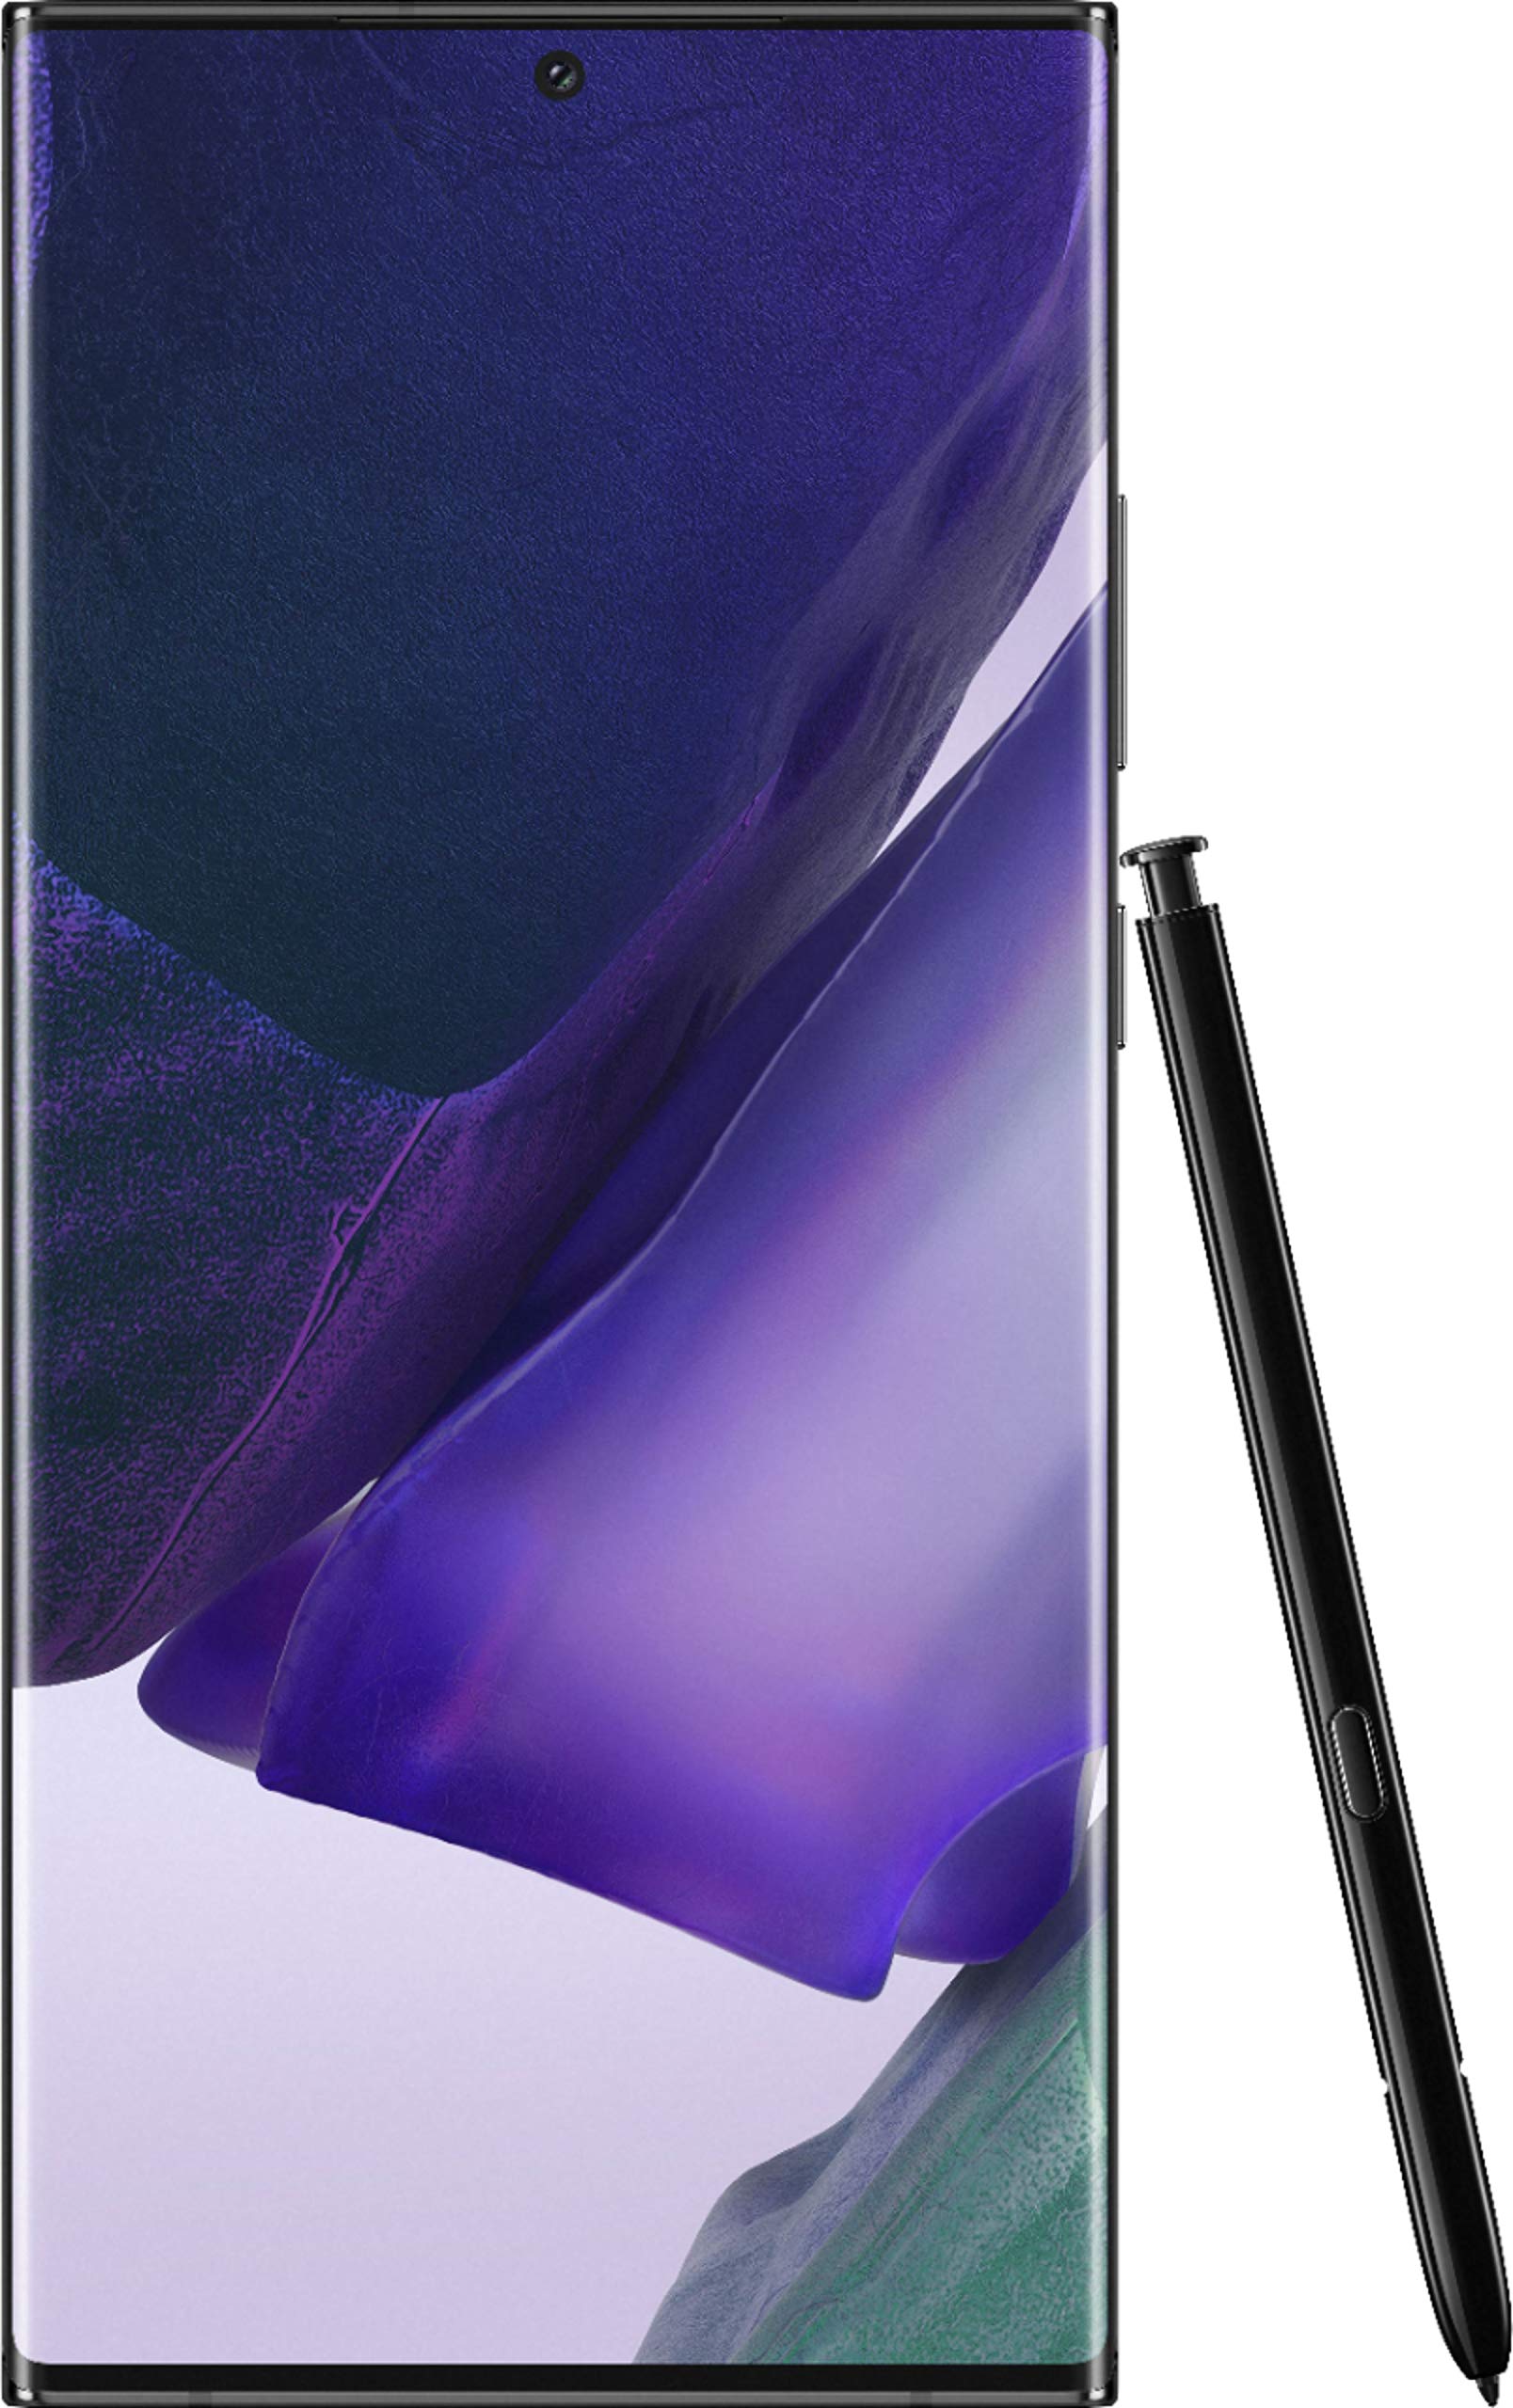 Samsung Galaxy Note 20 Ultra 5G with Snapdragon 865+ (Mystic Black, 12GB RAM, 256GB Storage)